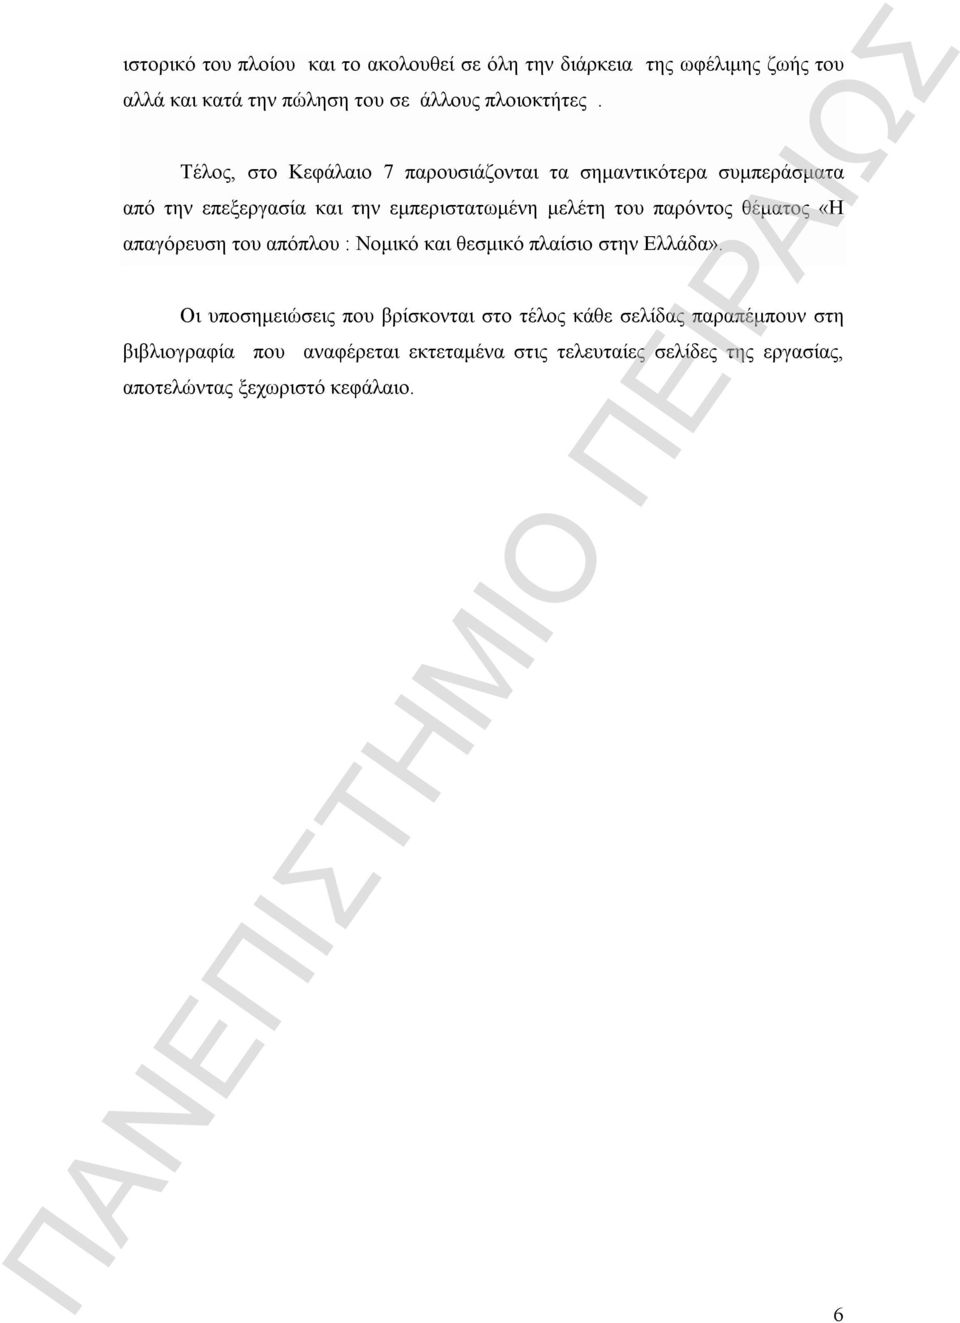 παρόντος θέματος «Η απαγόρευση του απόπλου : Νομικό και θεσμικό πλαίσιο στην Ελλάδα».